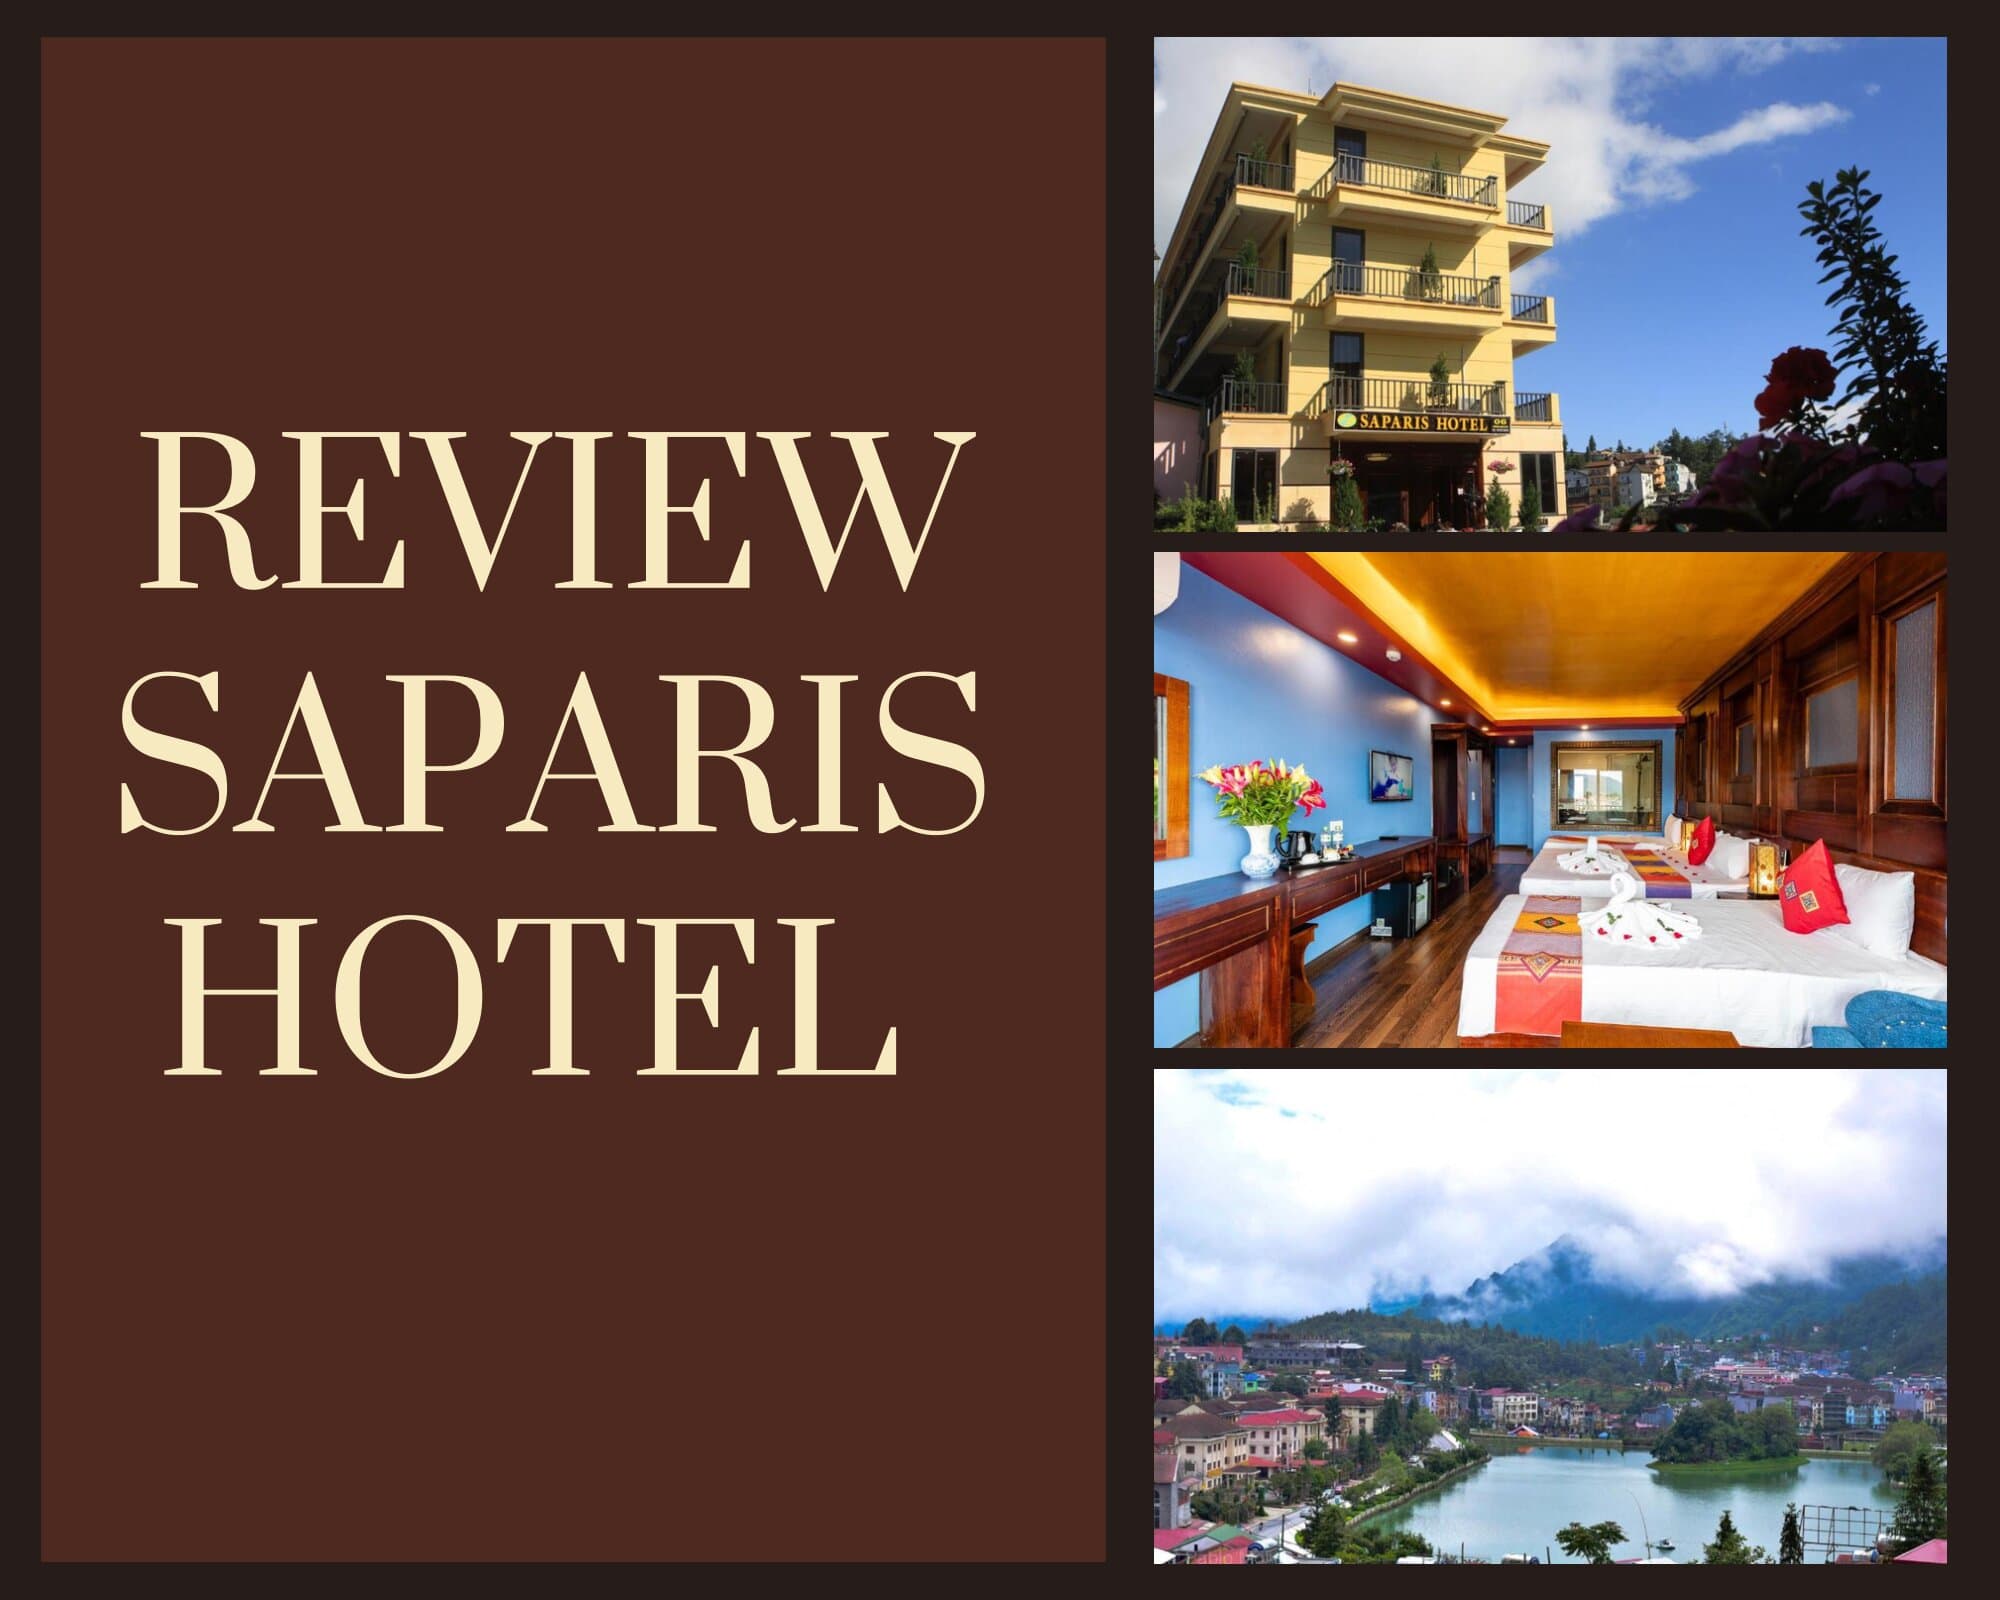 Review Saparis Hotel - Vẻ đẹp Châu Âu thanh lịch nơi núi rừng Tây Bắc 